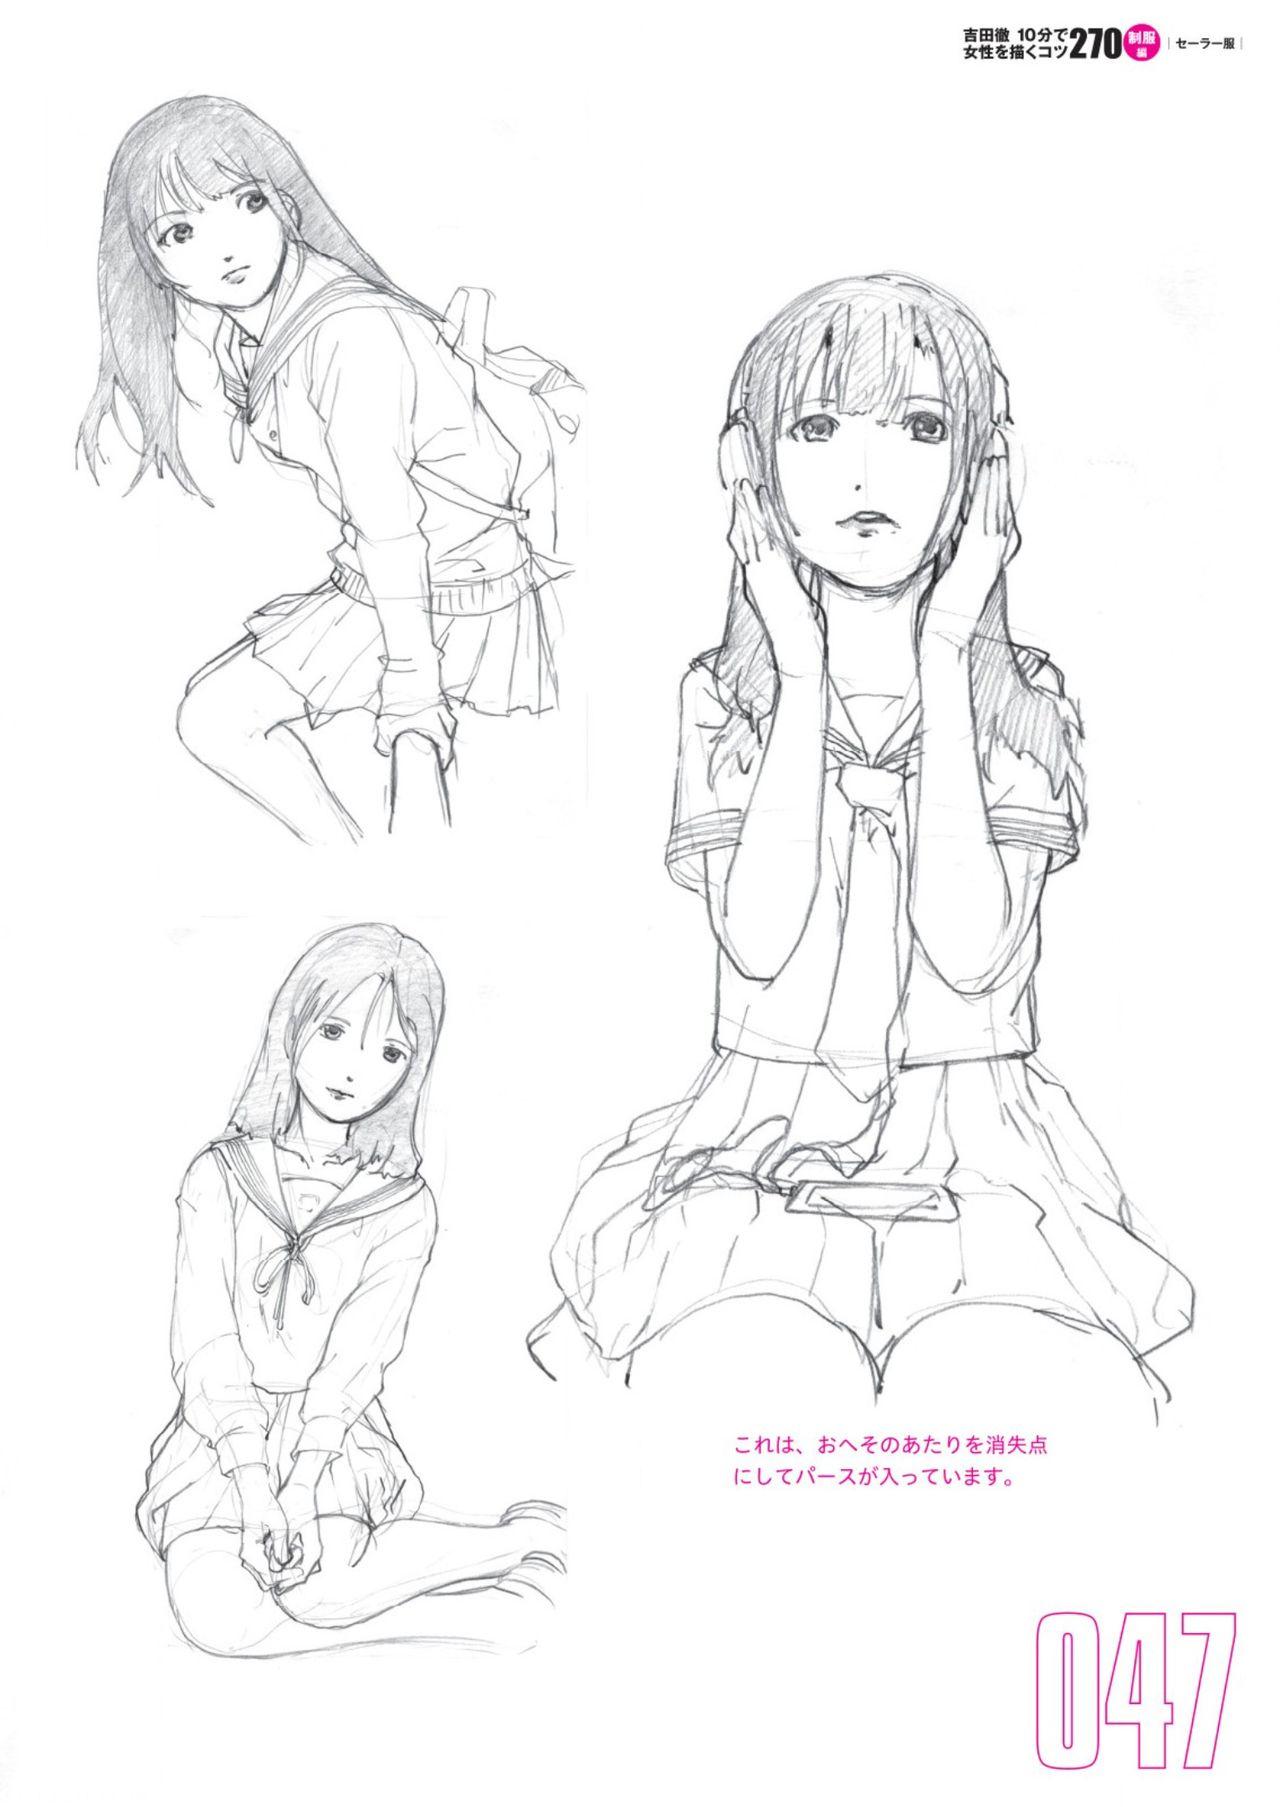 Toru Yoshida Tips for drawing women in 10 minutes 270 Uniforms 48